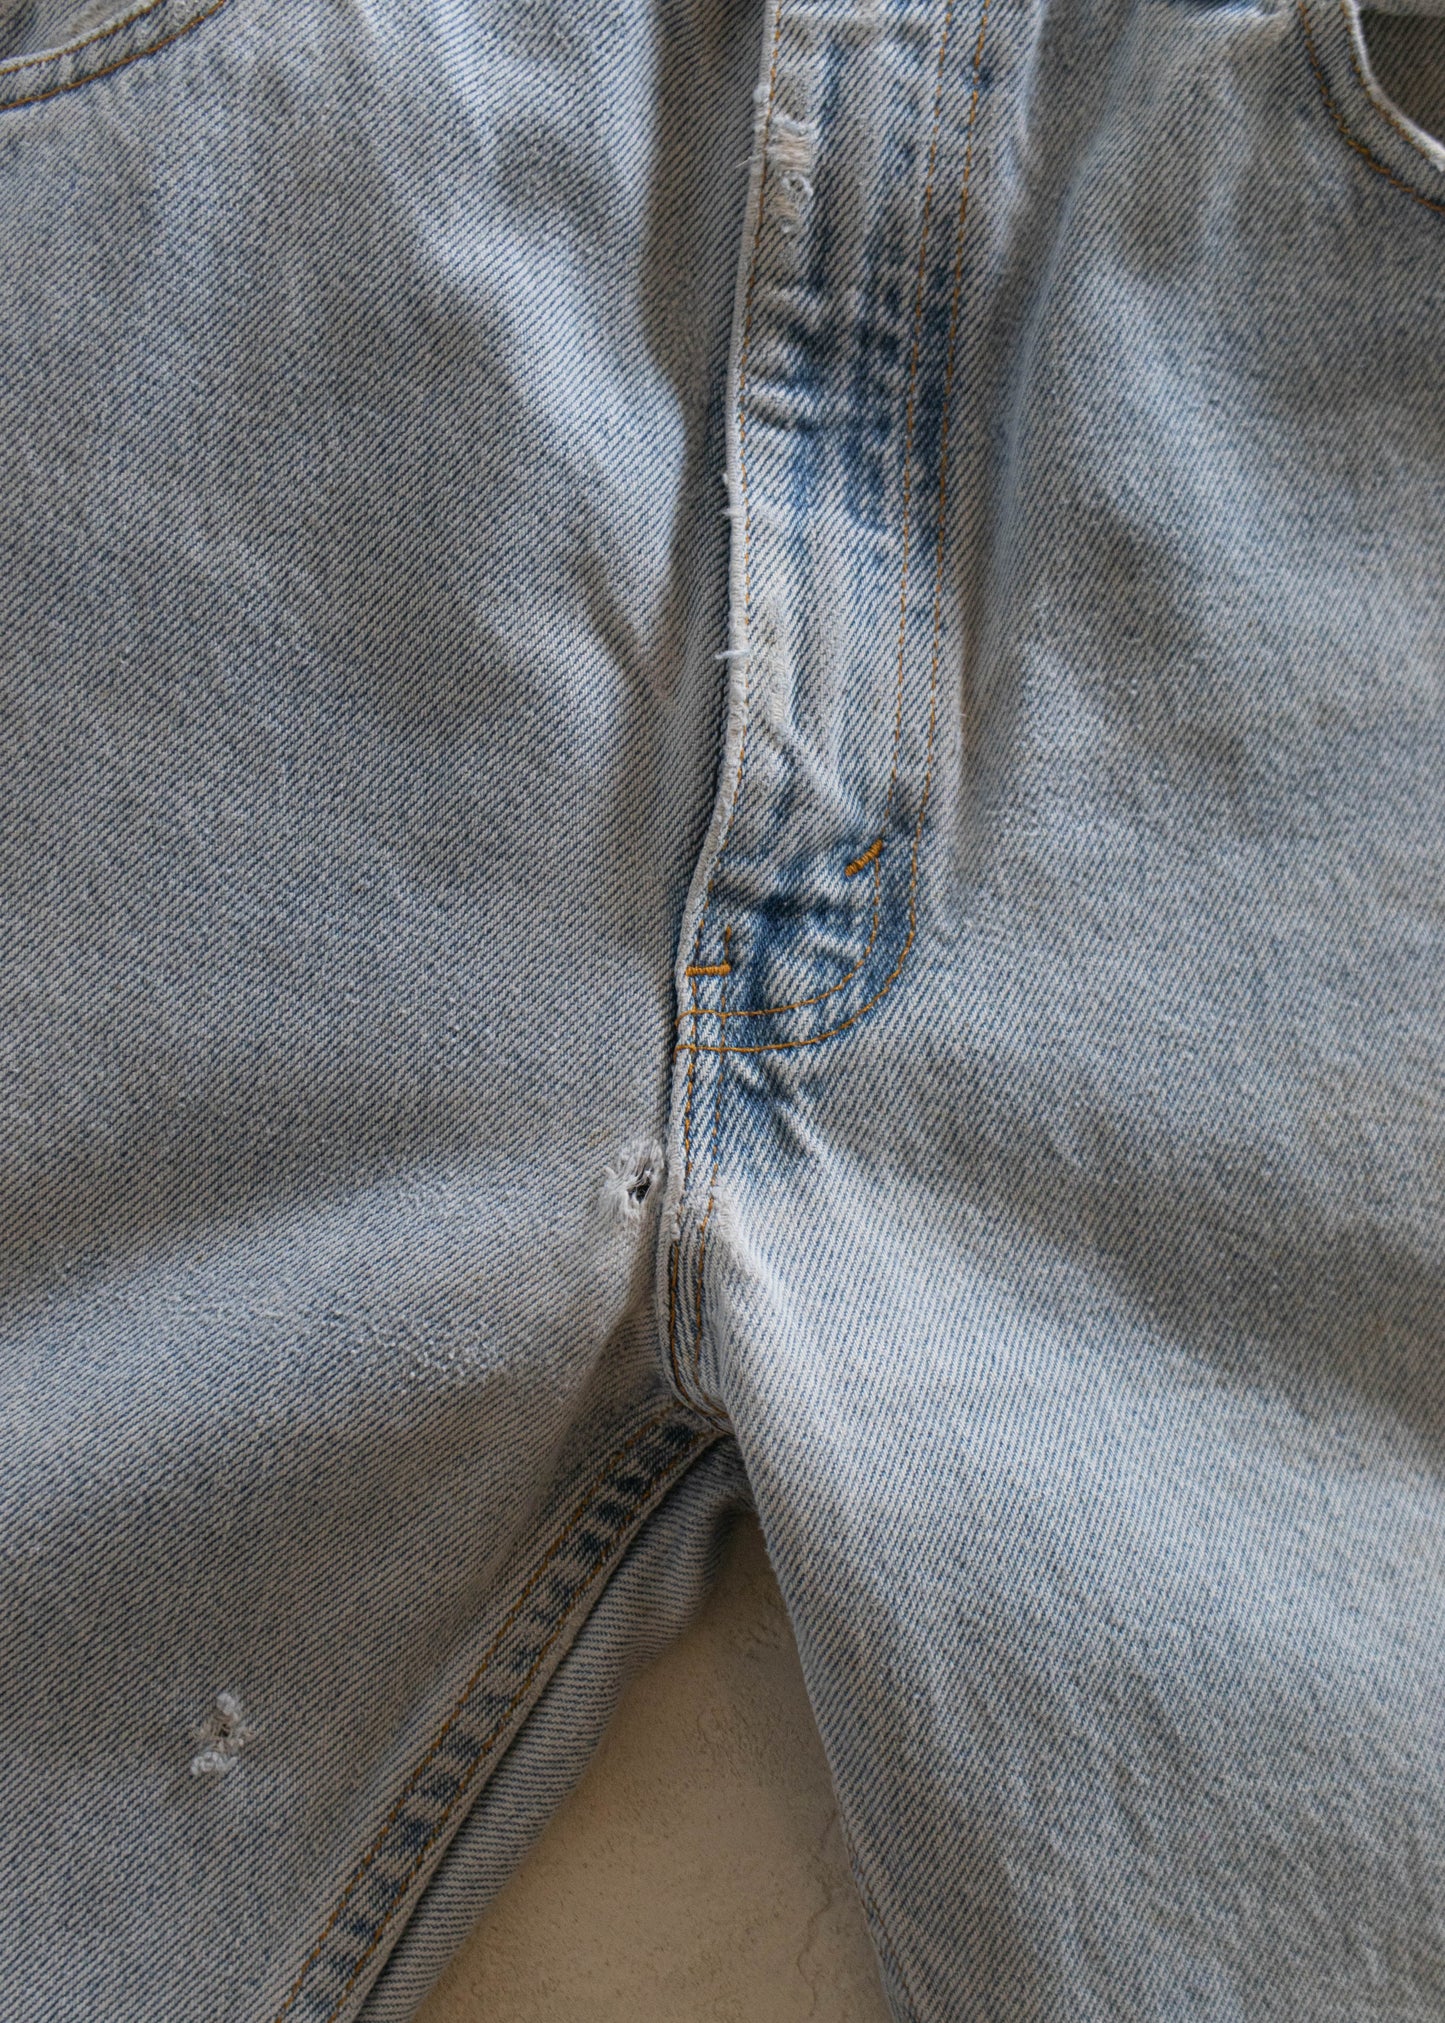 1980s Levi's 505 Lightwash Jeans Size Women's 29 Men's 32